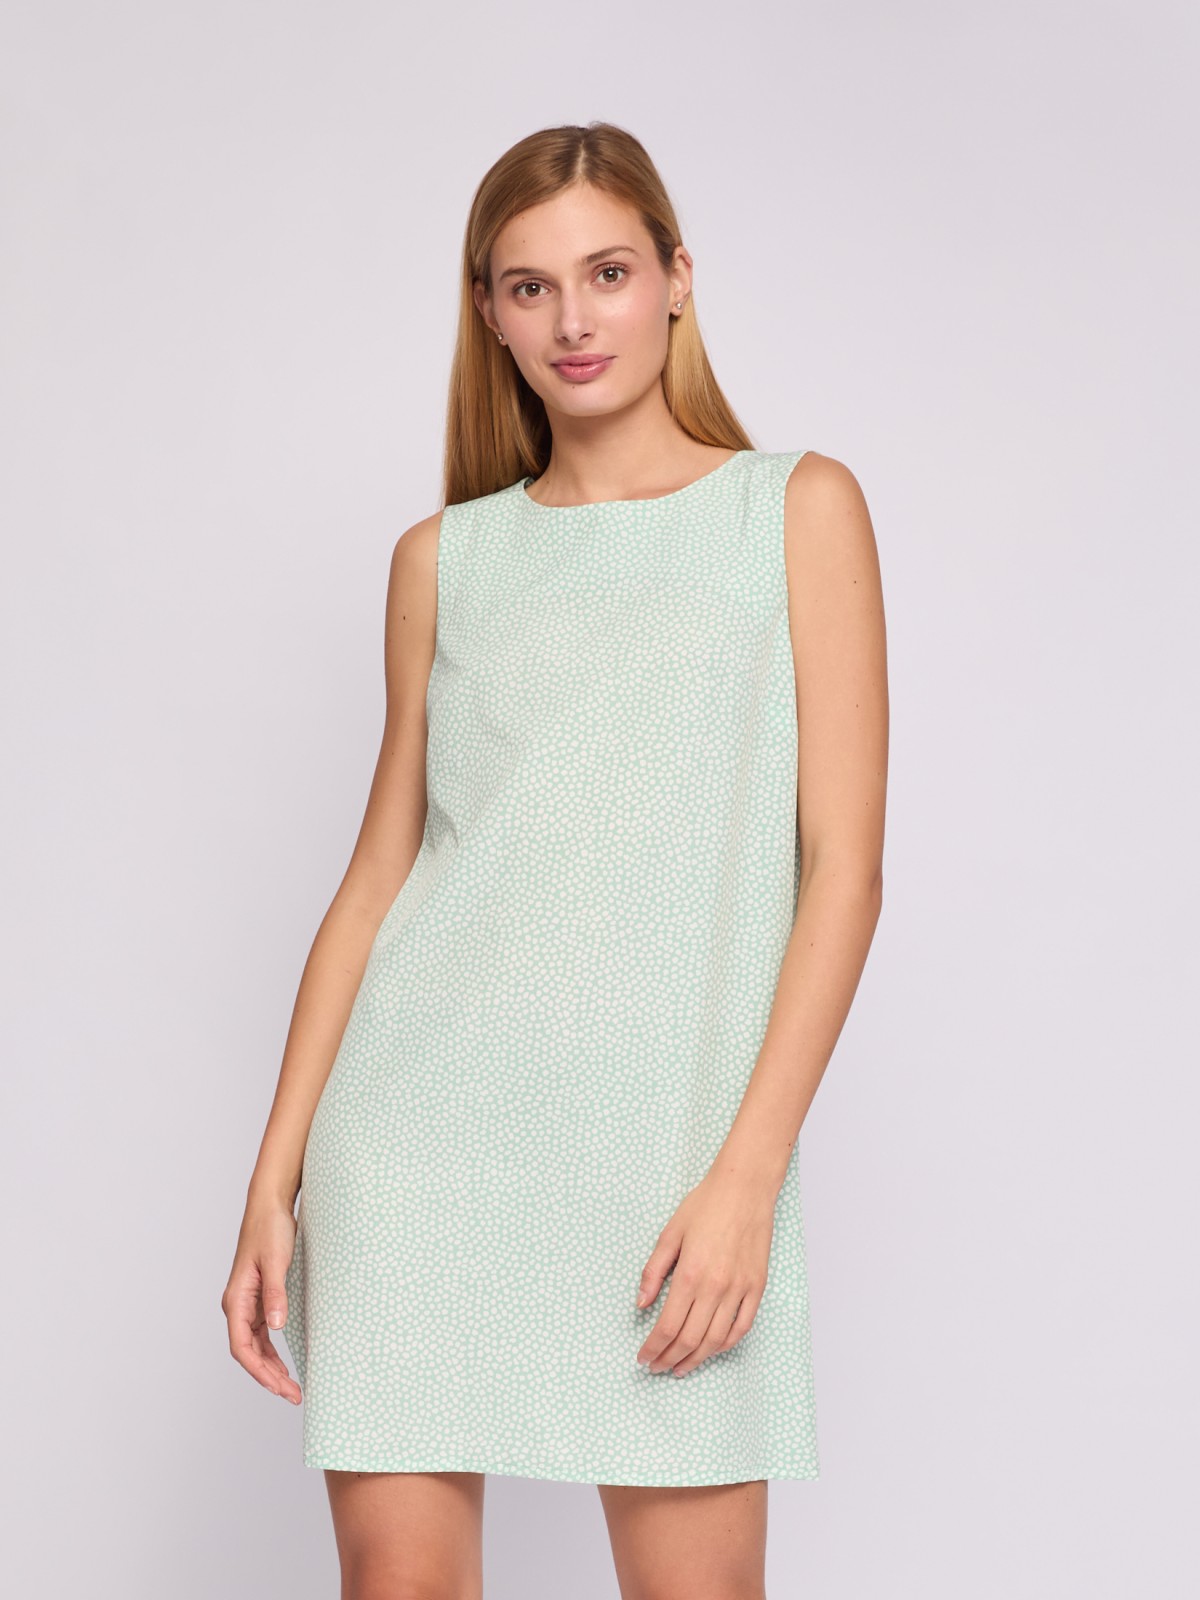 Платье мини без рукавов с вырезом на спине zolla 024238262232, цвет светло-зеленый, размер XS - фото 2